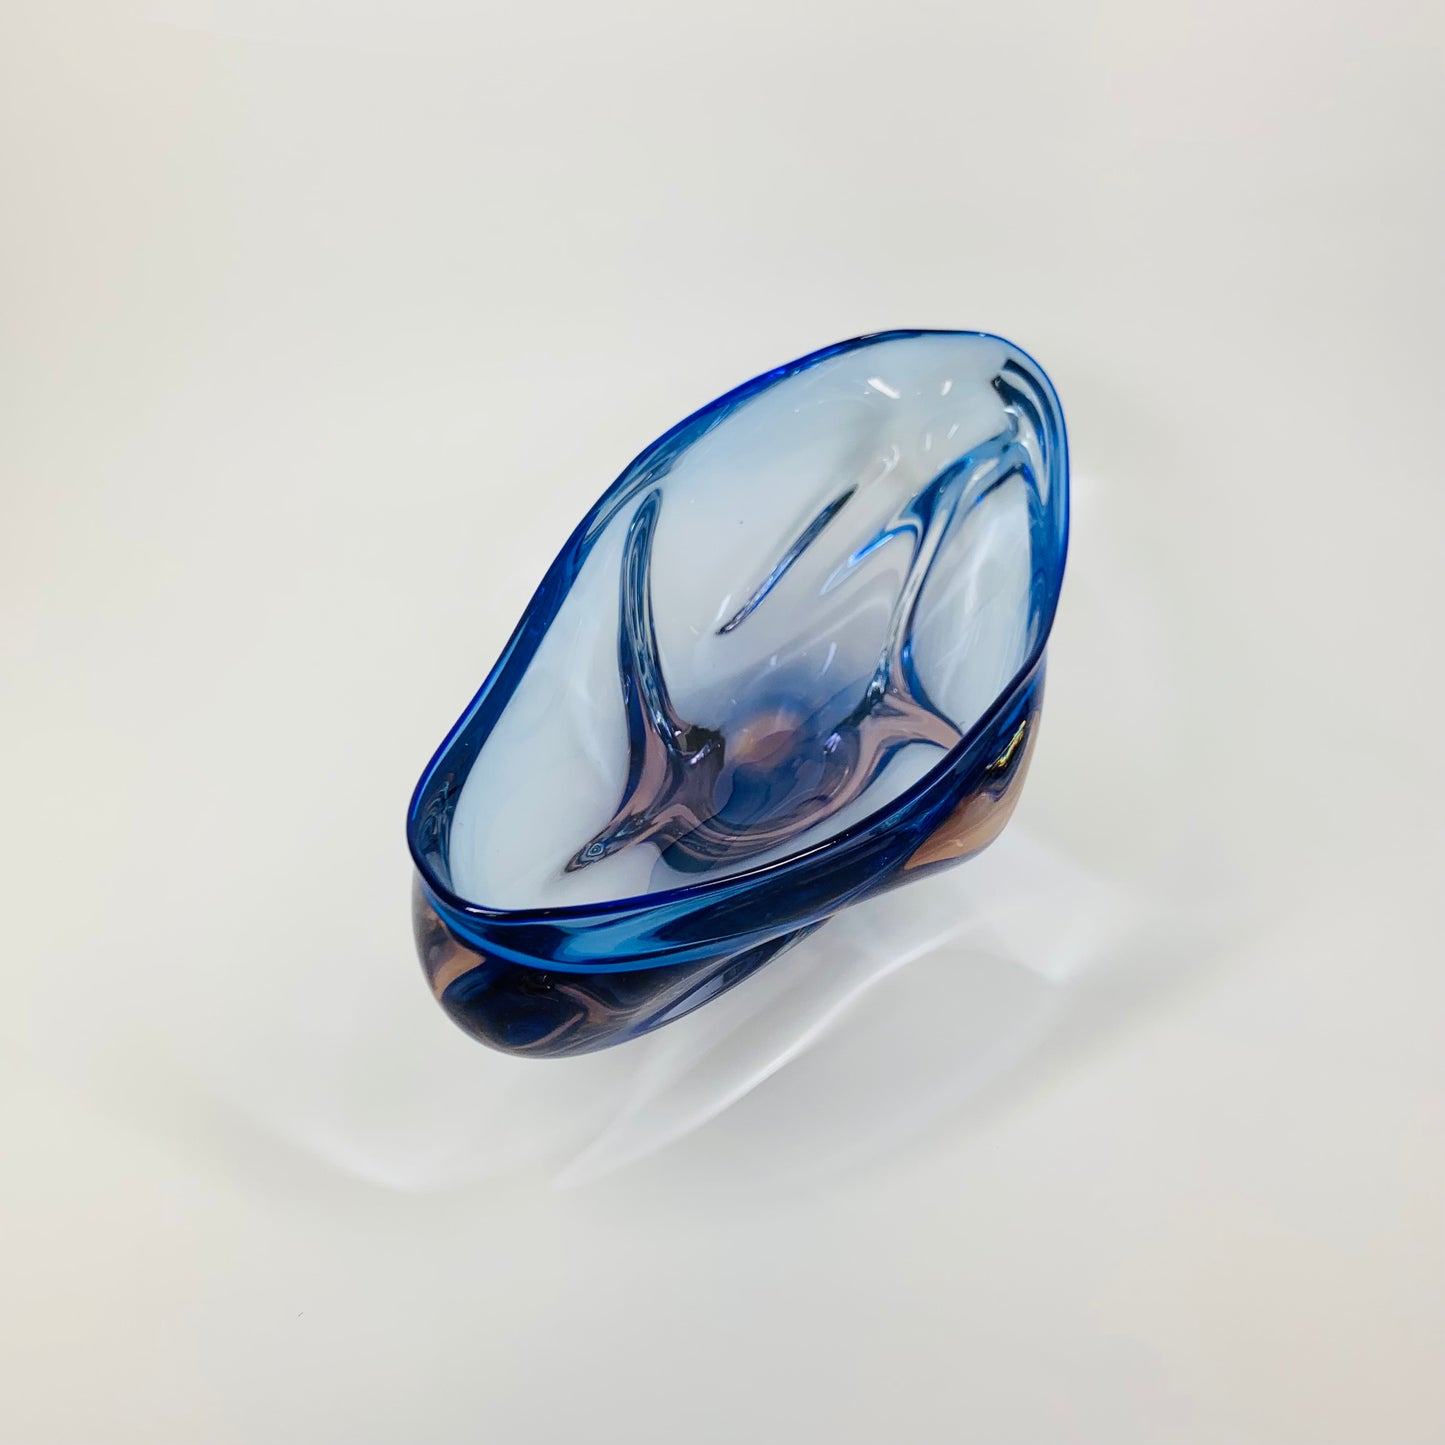 CZECH GLASS BLUE PINK BOWL